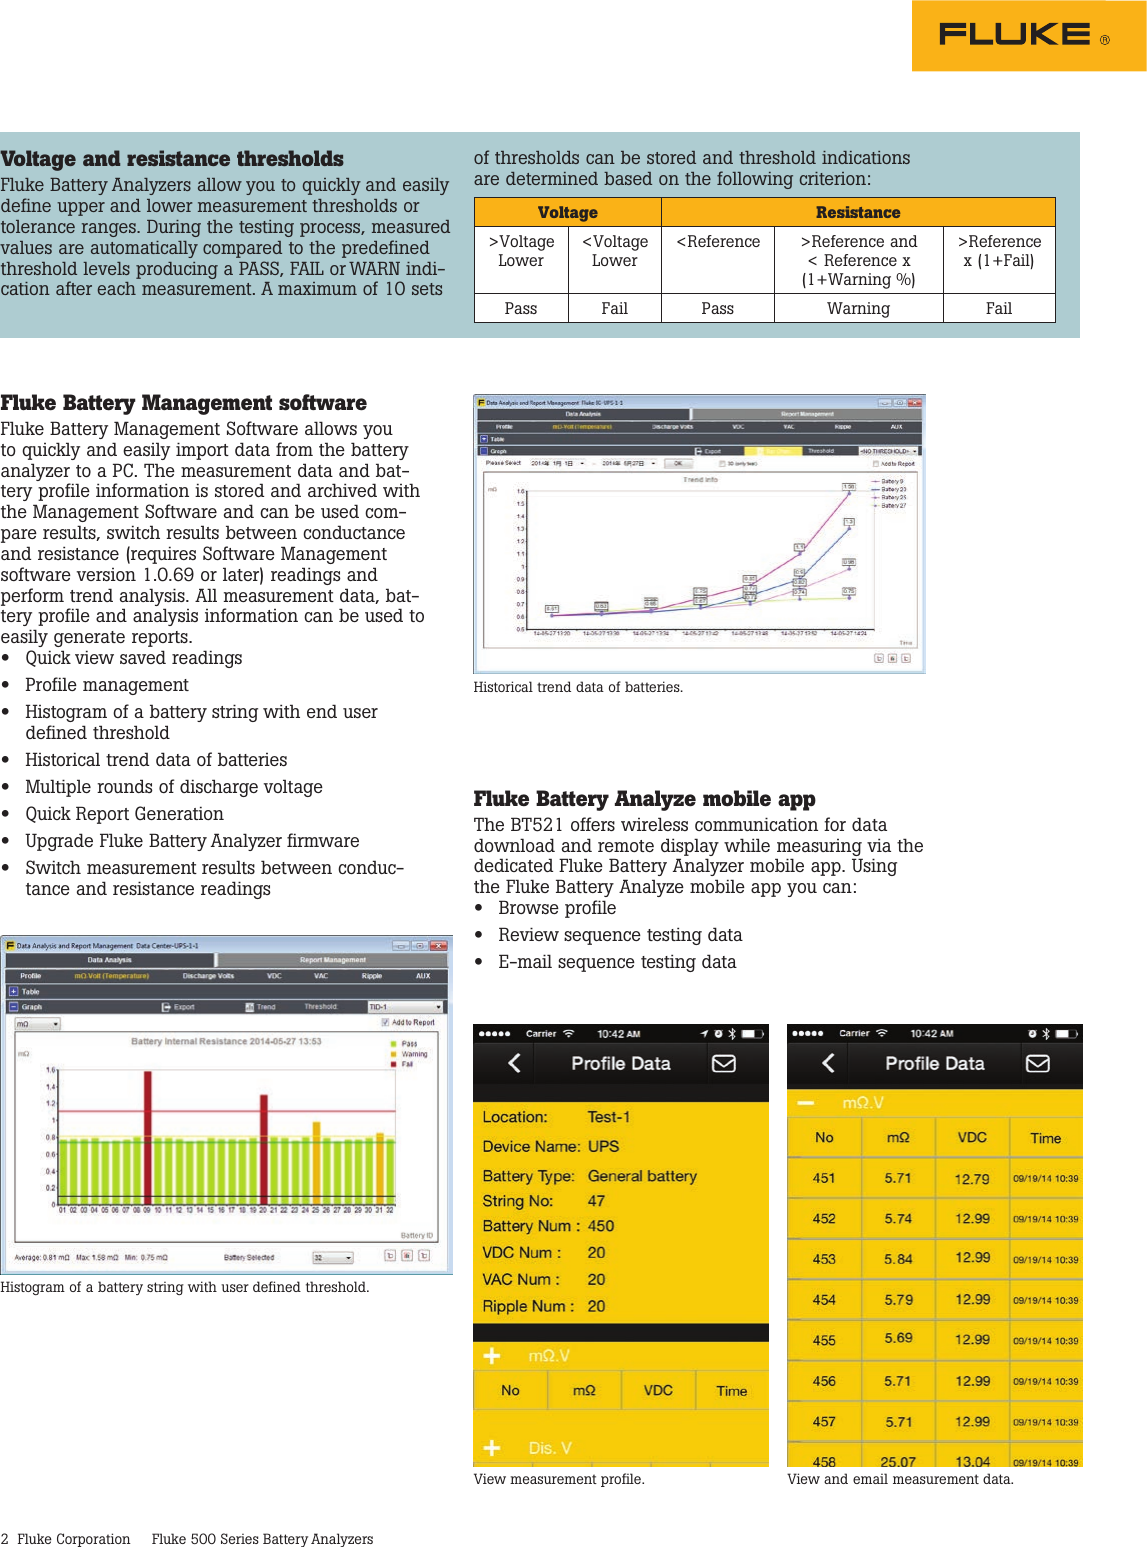 Page 2 of 5 - Fluke Fluke-500-Series-Data-Sheet- 500 Series Battery Analyzers  Fluke-500-series-data-sheet